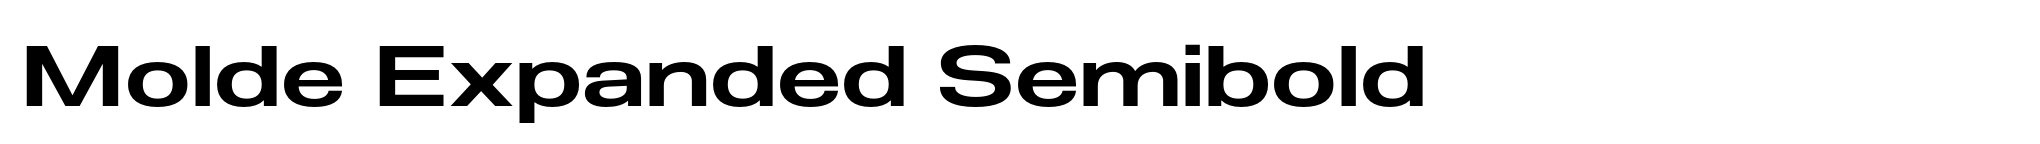 Molde Expanded Semibold image